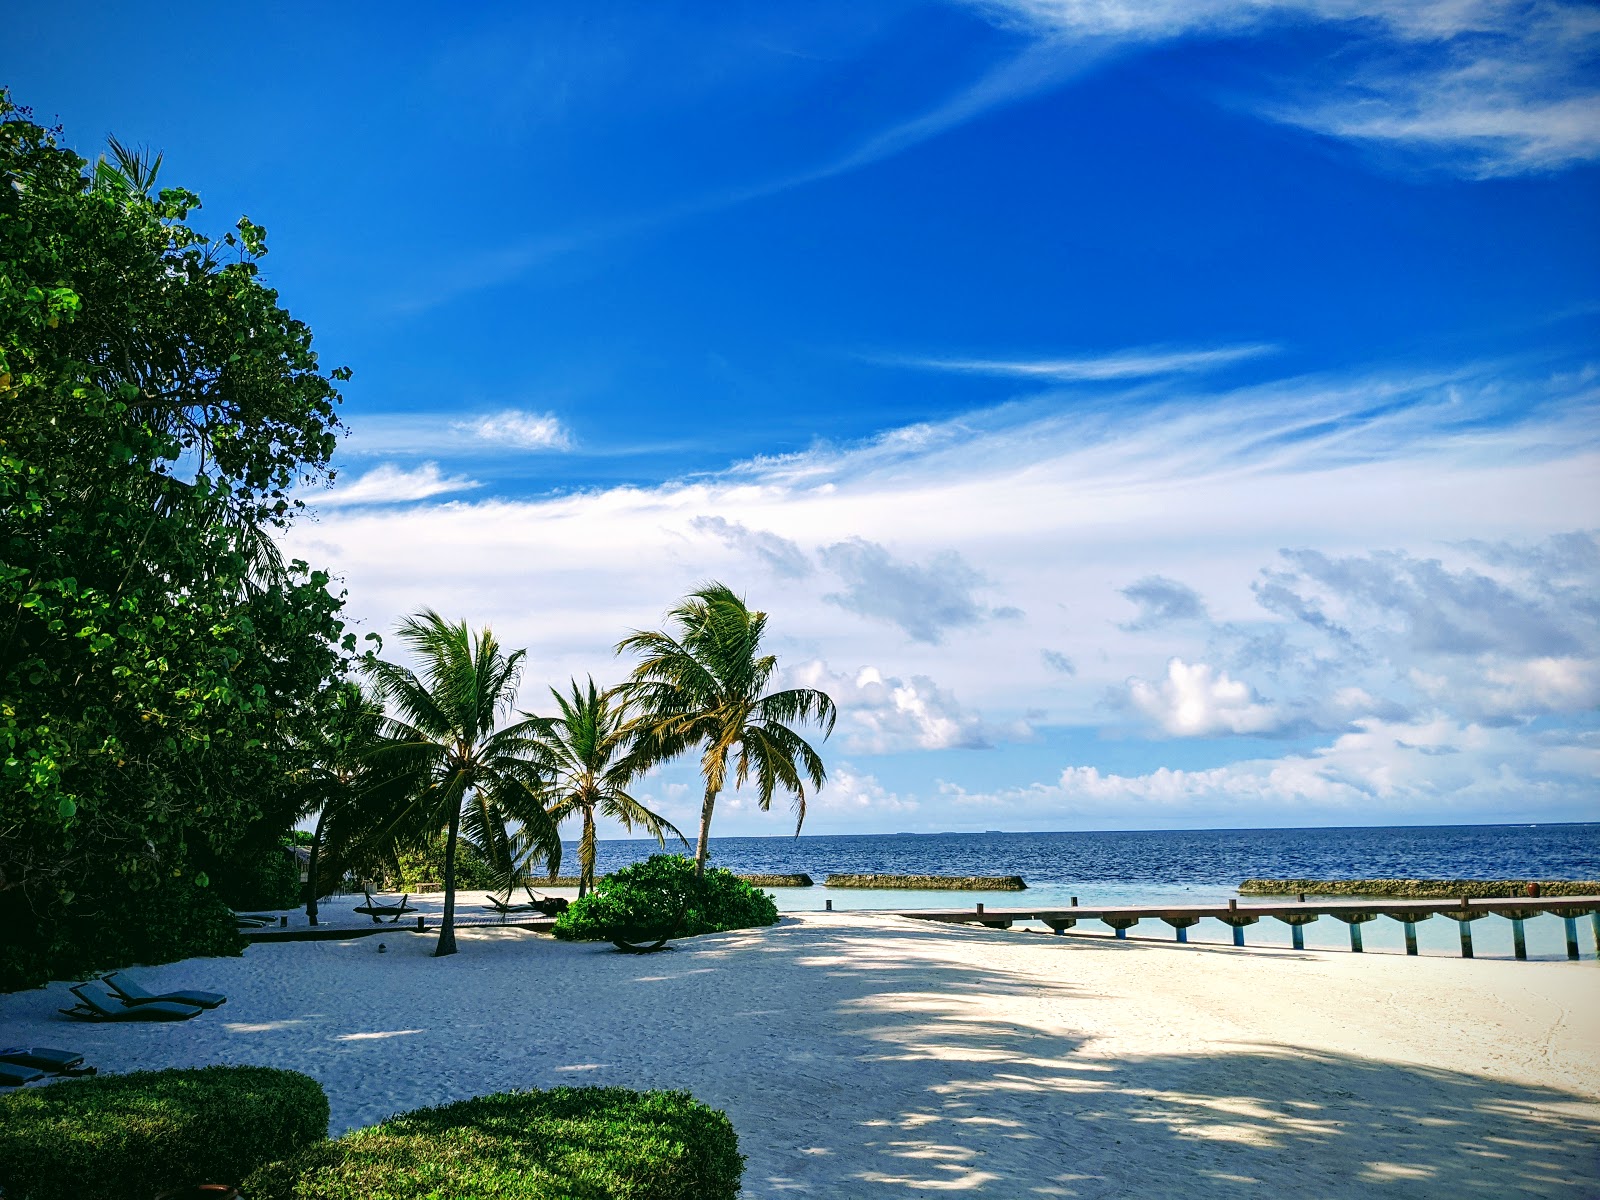 Fotografie cu Coco Bodu Hithi Resort cu o suprafață de nisip alb